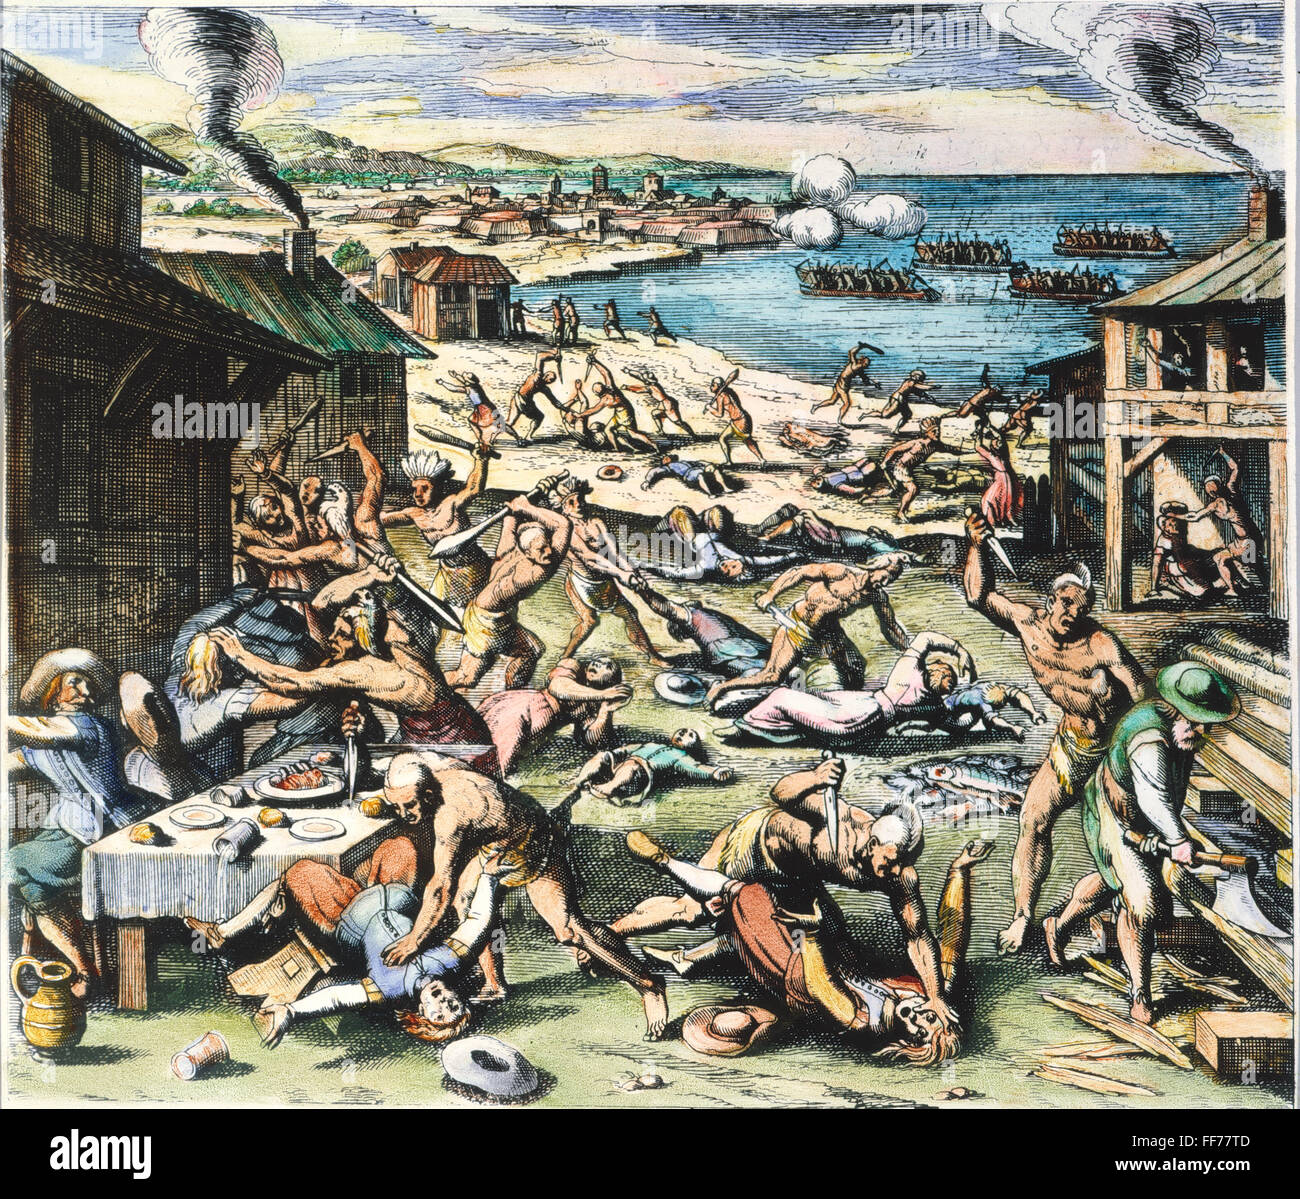 Картина голод. Нападение индейцев на Джеймстаун. Джеймстаунская резня 1622. Нападение индейцев на Джеймстаун в 1622. Джеймстаун колония.